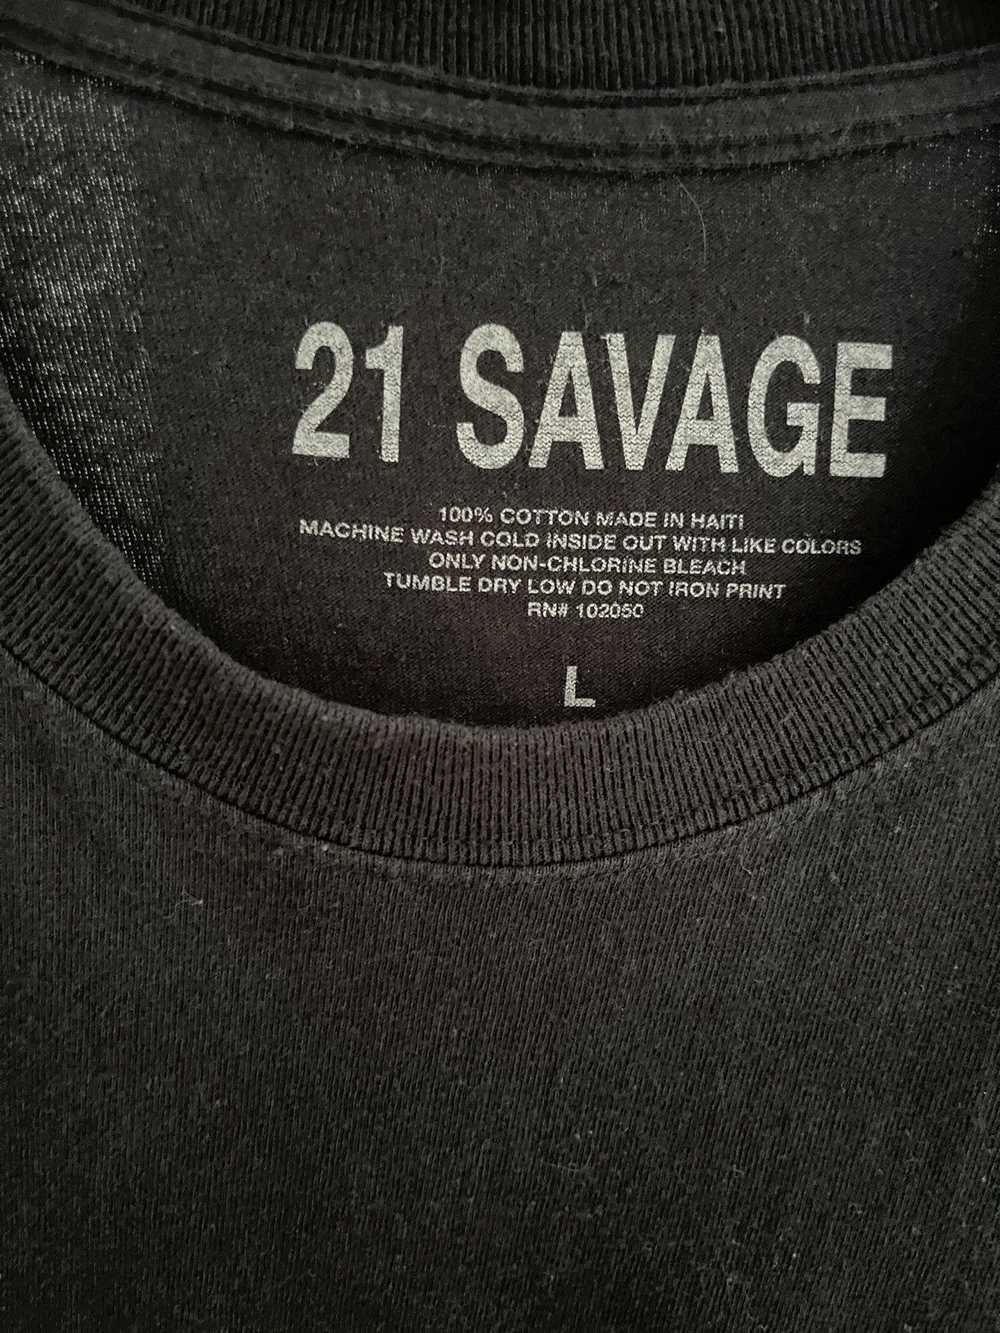 21 Savage 21 Savage 2018 Tour T-Shirt - image 5